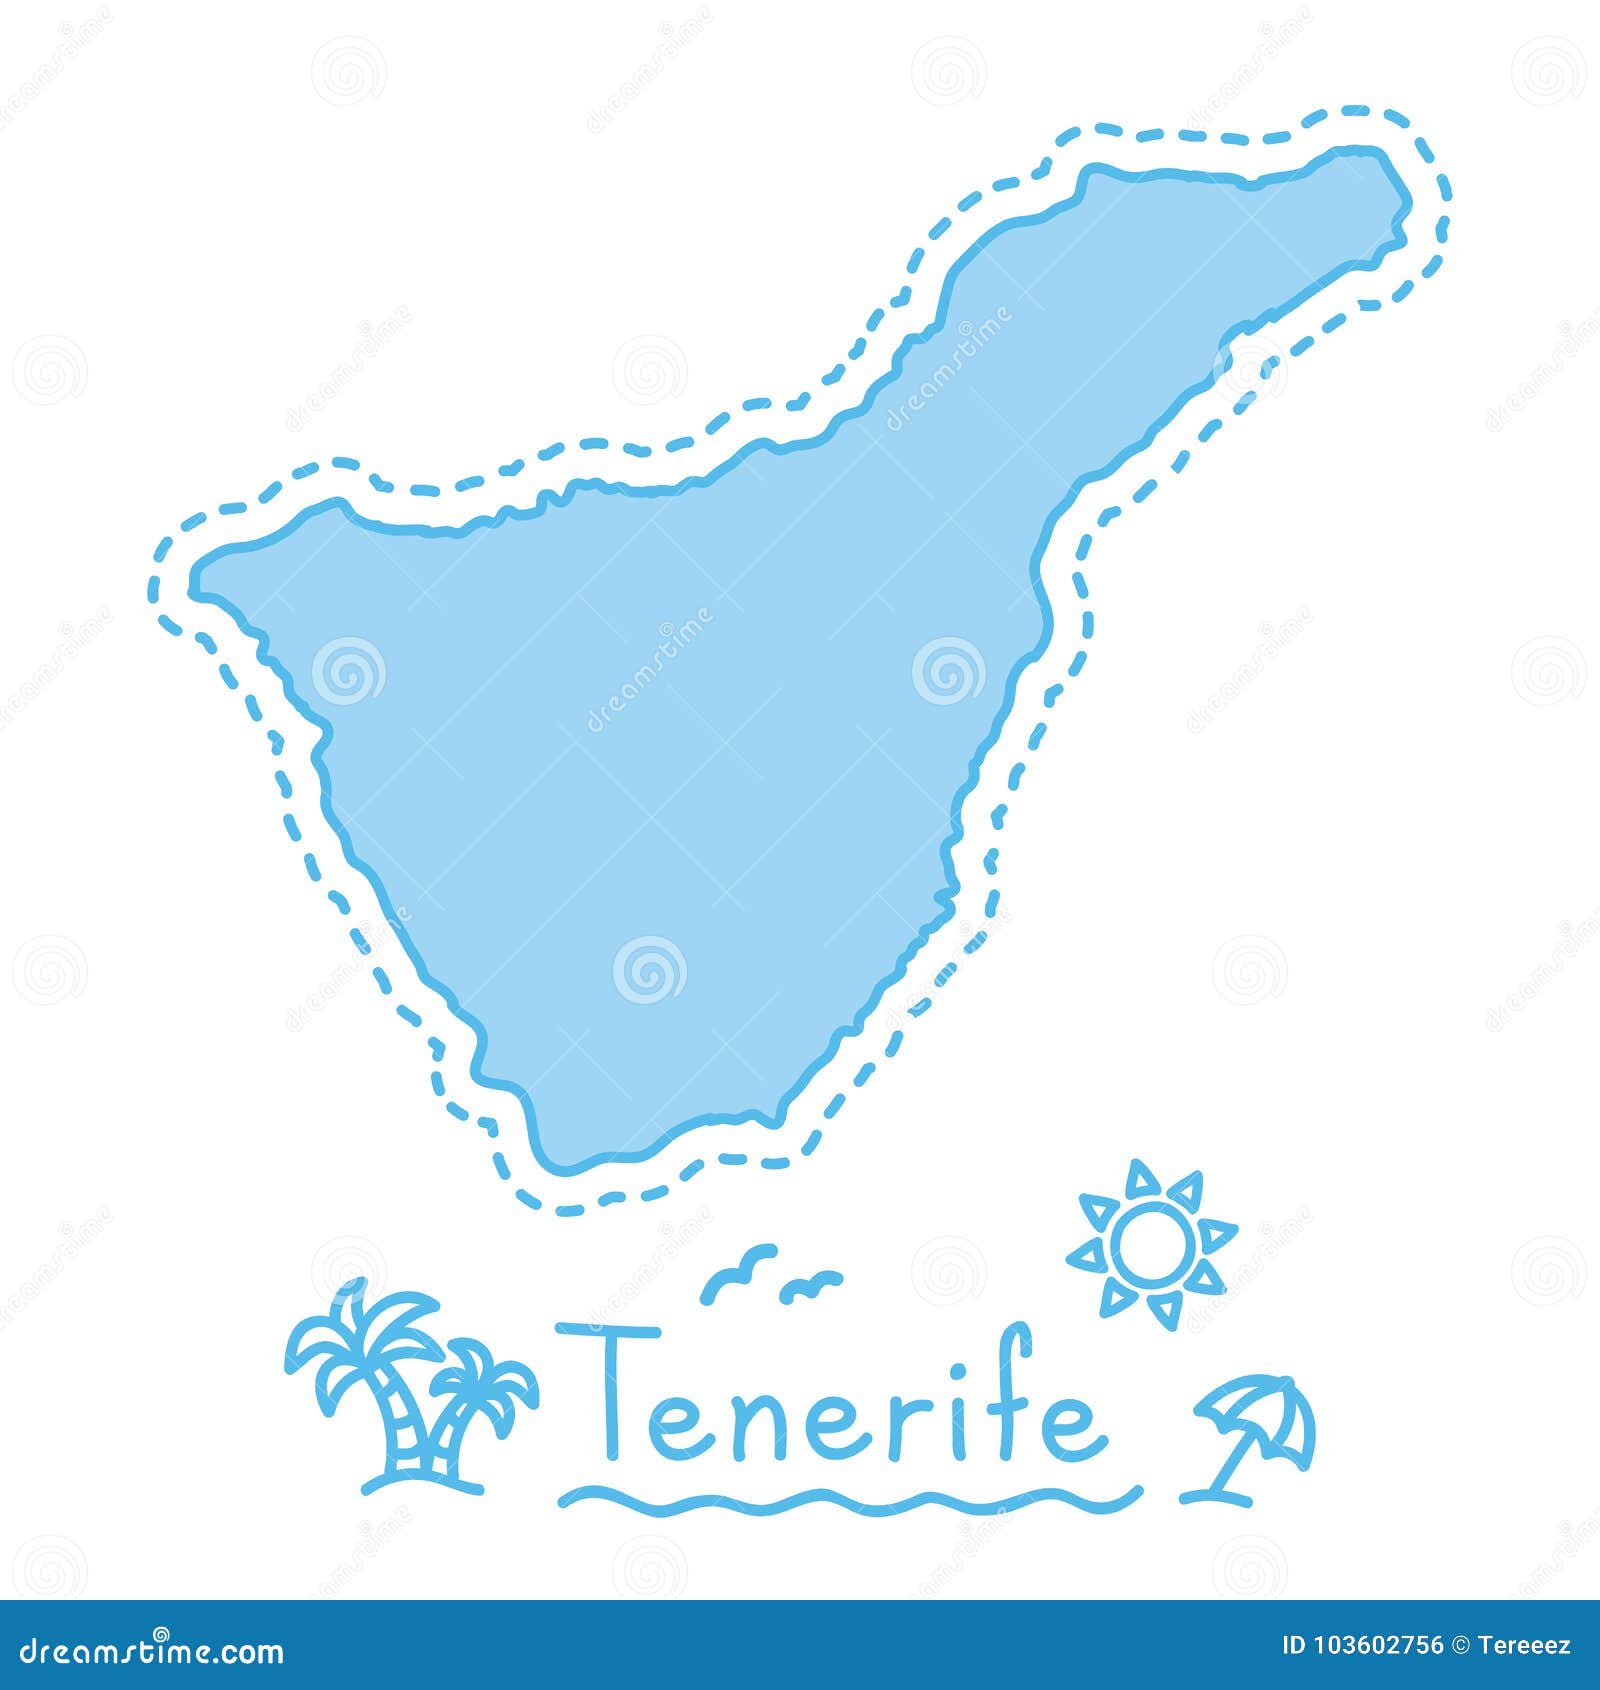 Les Iles Canaries De Concept De Cartographie D Isolement Par Carte D Ile De Tenerife Illustration De Vecteur Illustration Du Carte Espagne 103602756